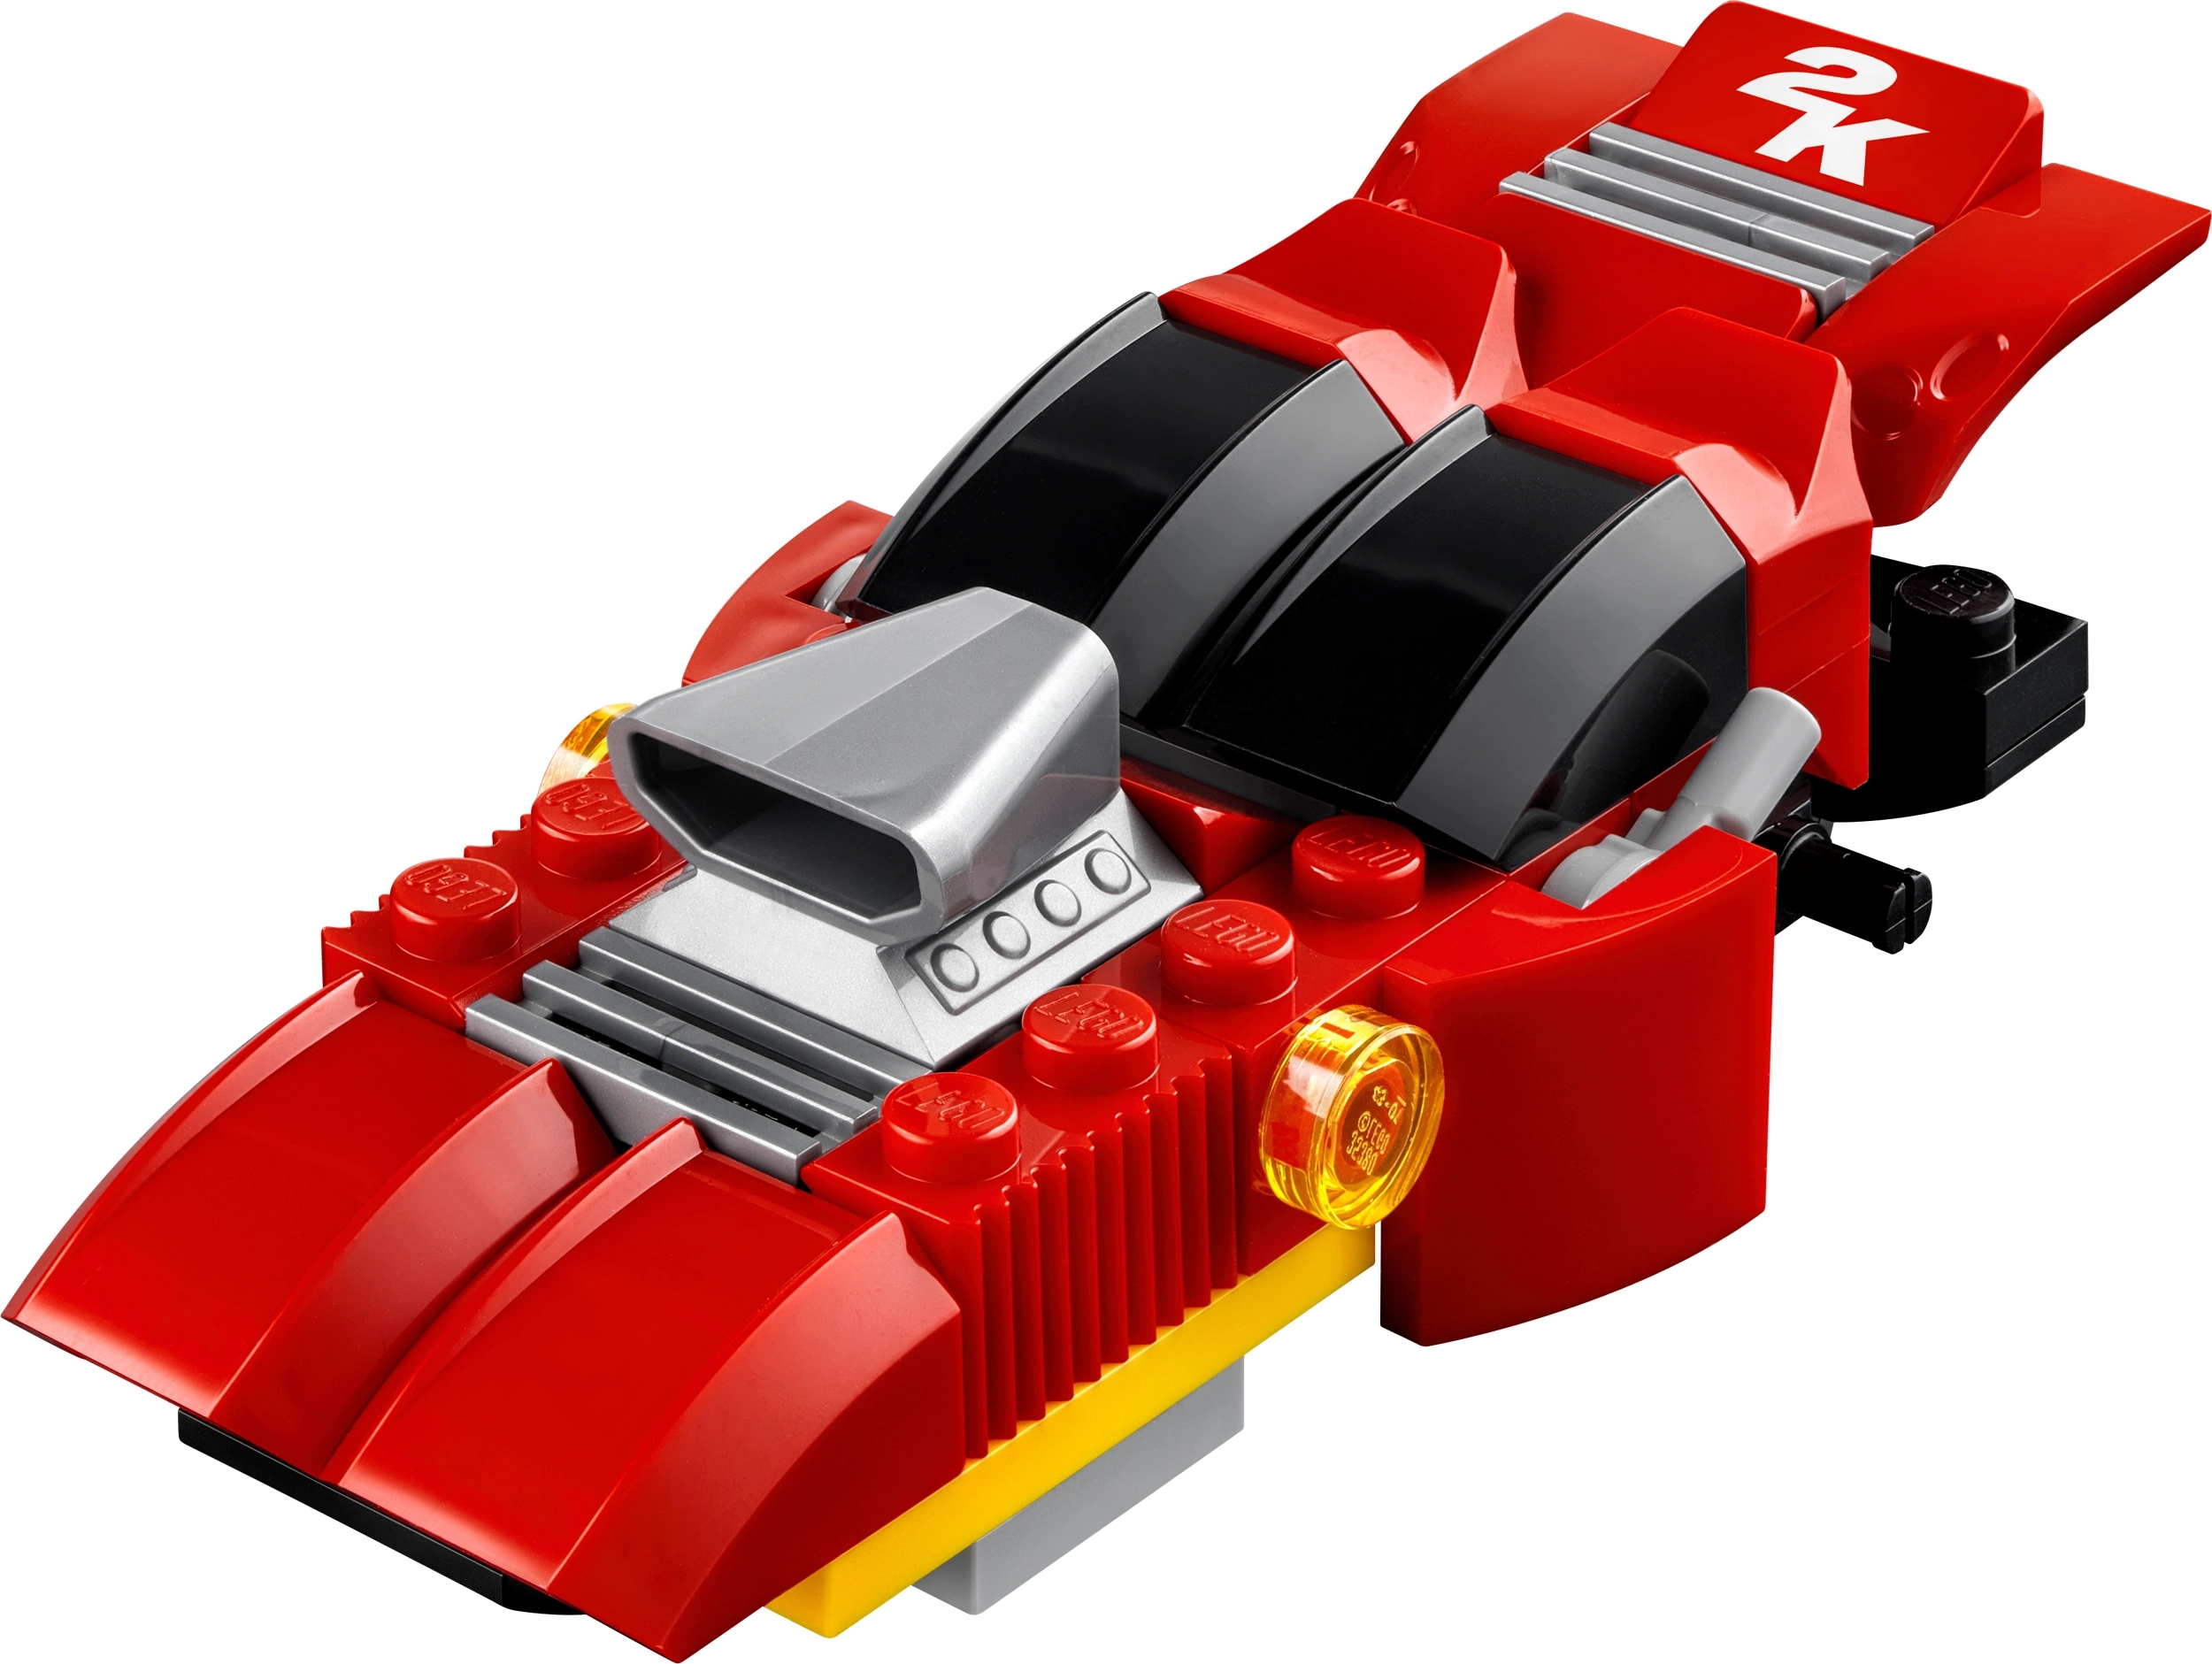 レーシングゲーム「レゴ(R) 2K ドライブ」つくって、探検して、レース